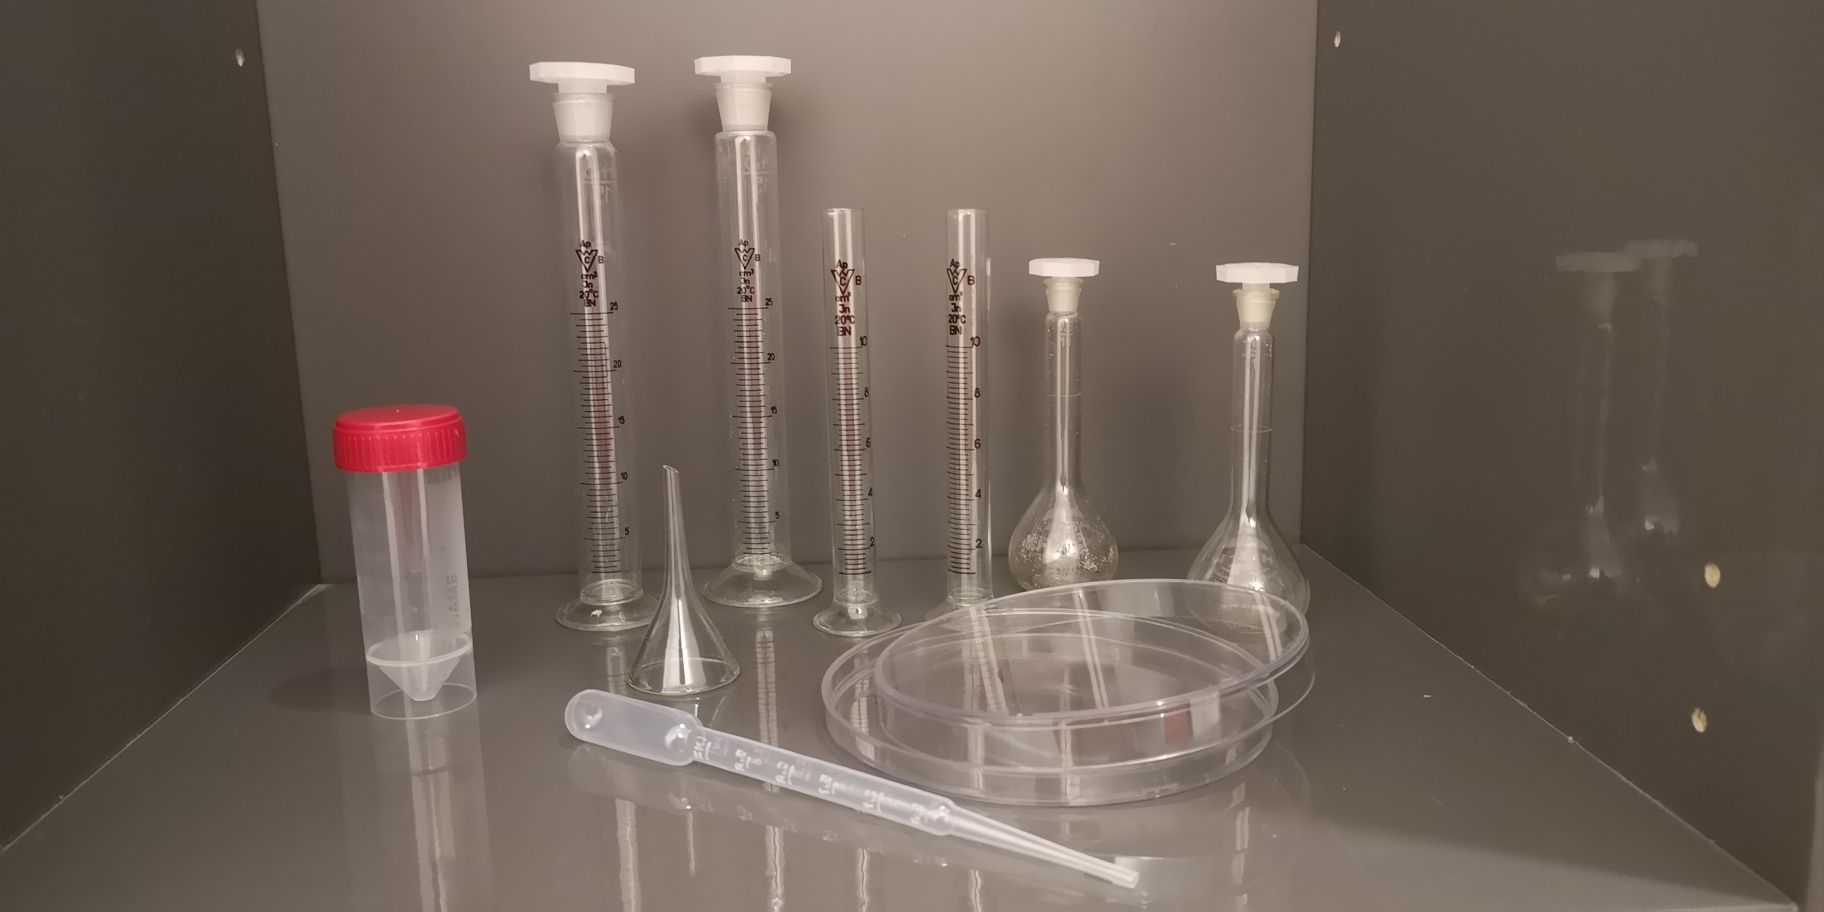 Duży zestaw  szkła laboratoryjnego - mały chemik
Witam do sprzedaży je